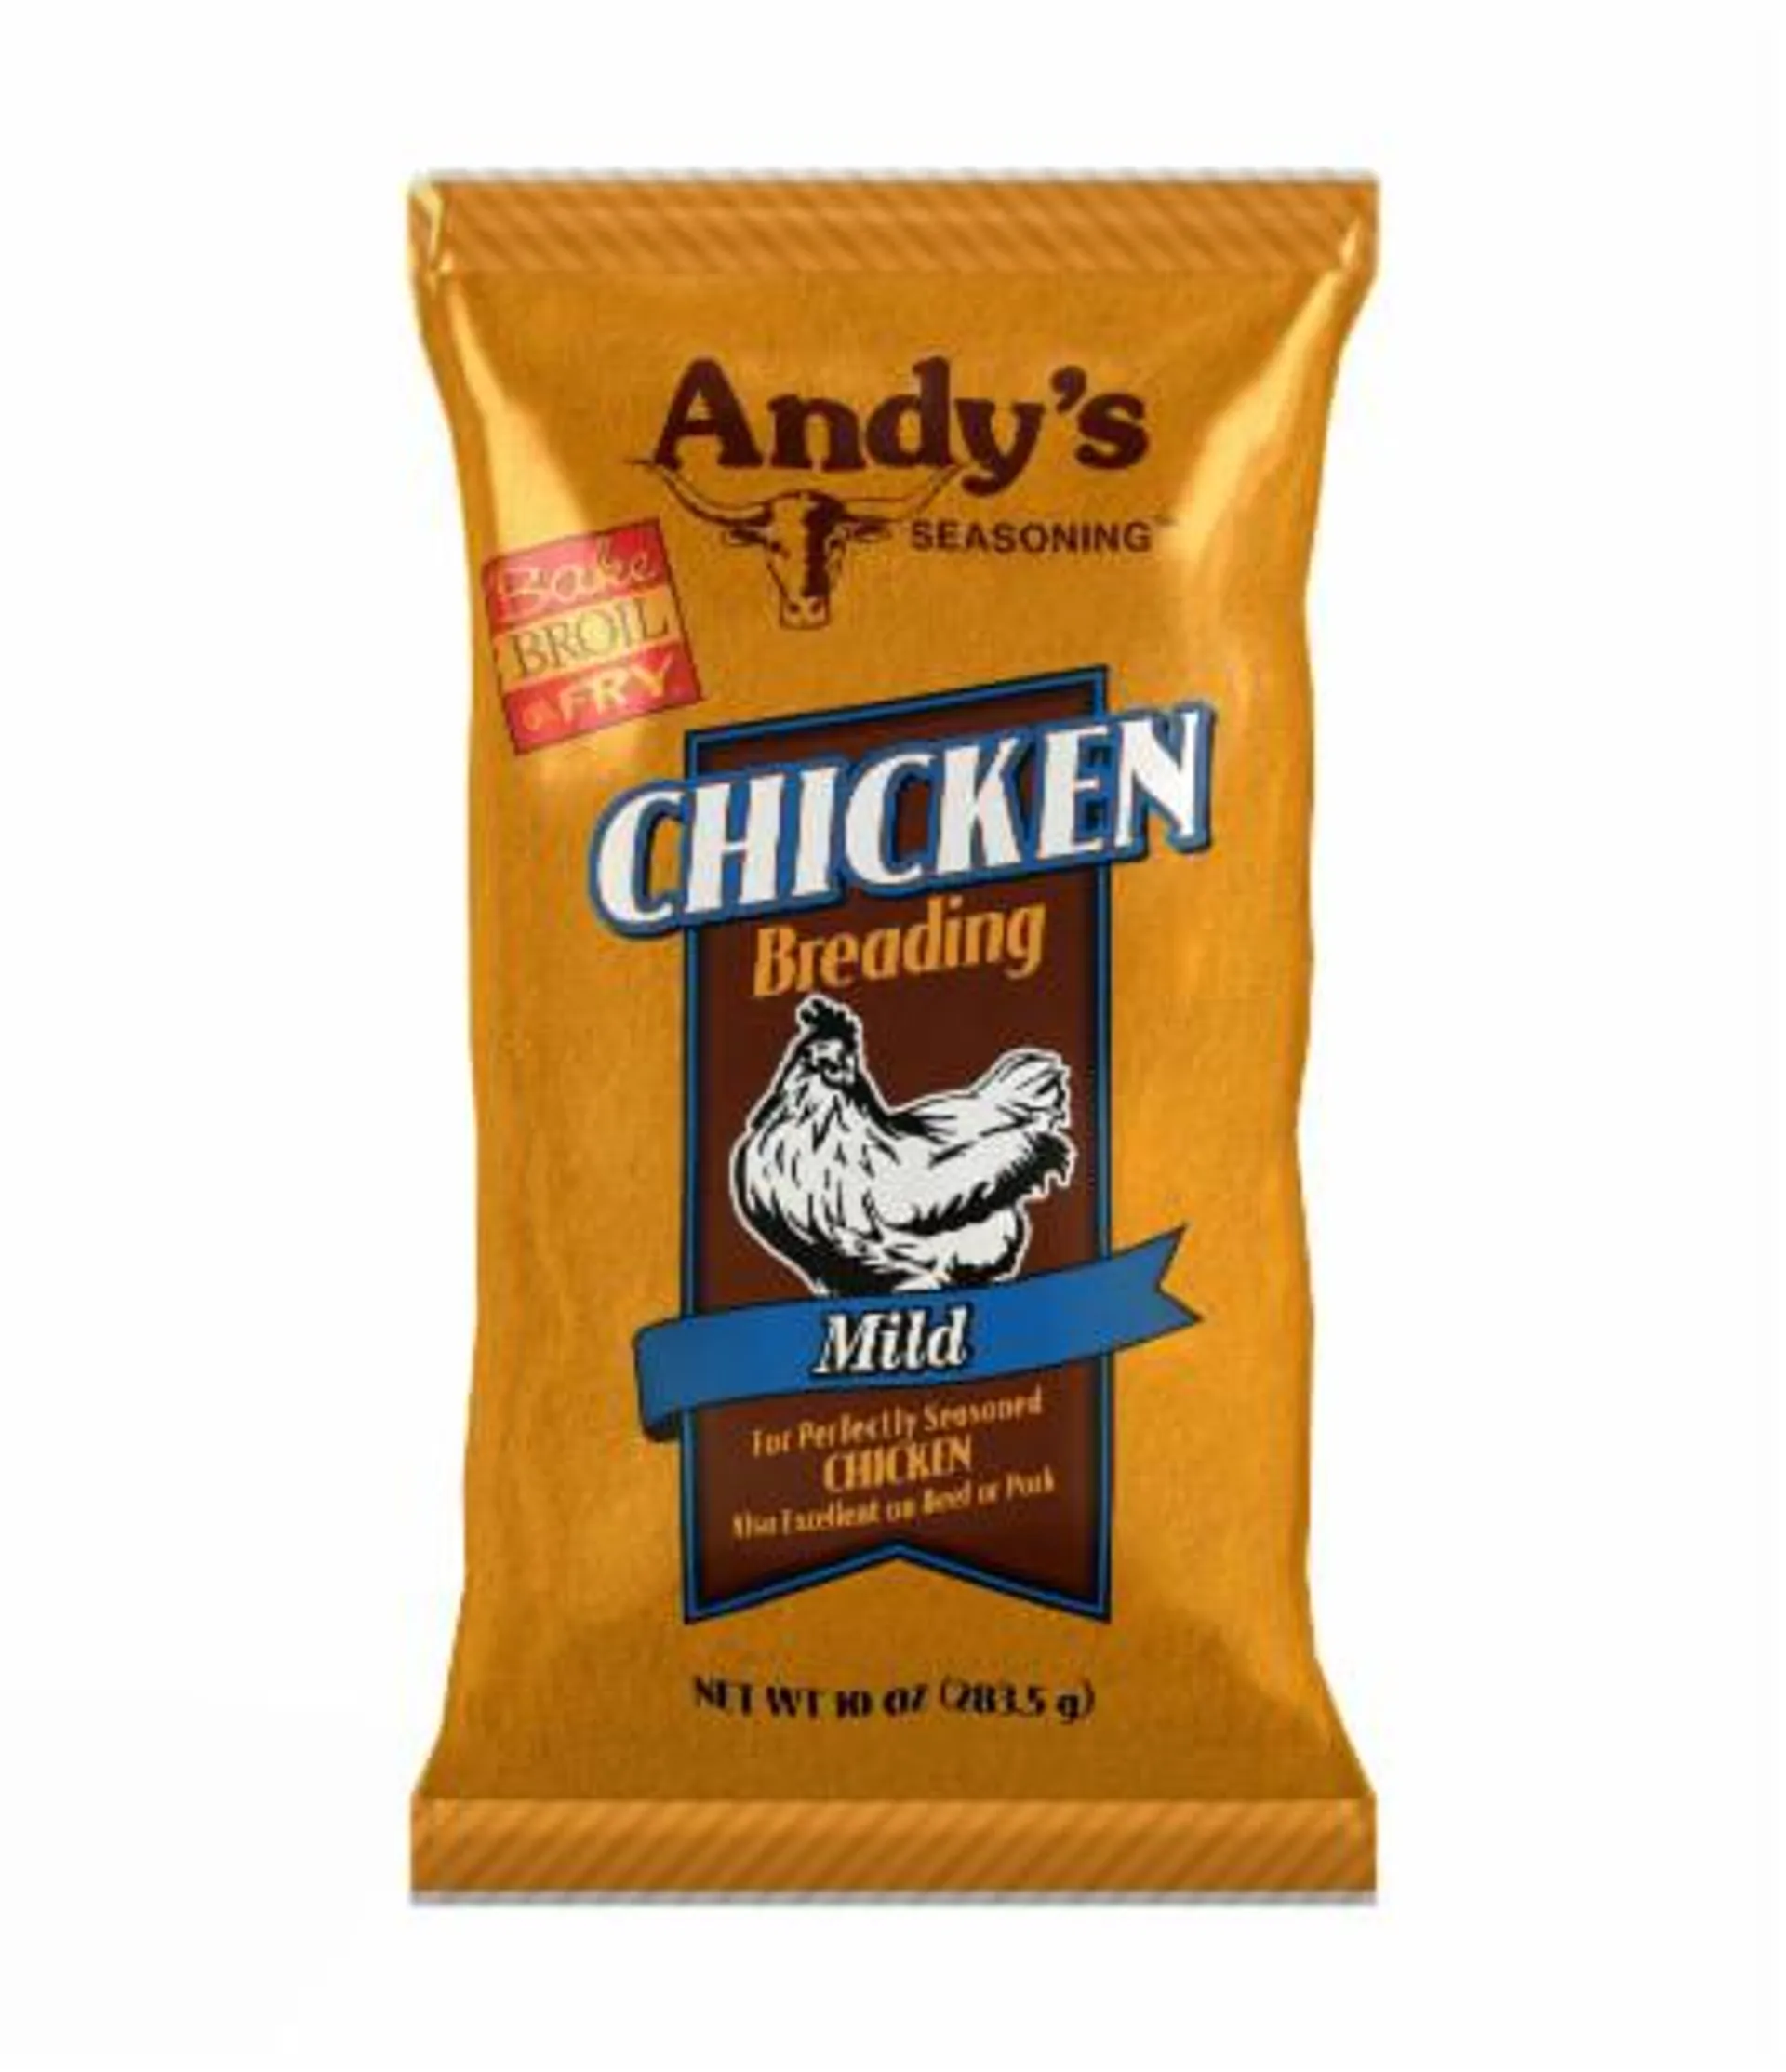 Andy's Seasoning Mild Chicken Breading